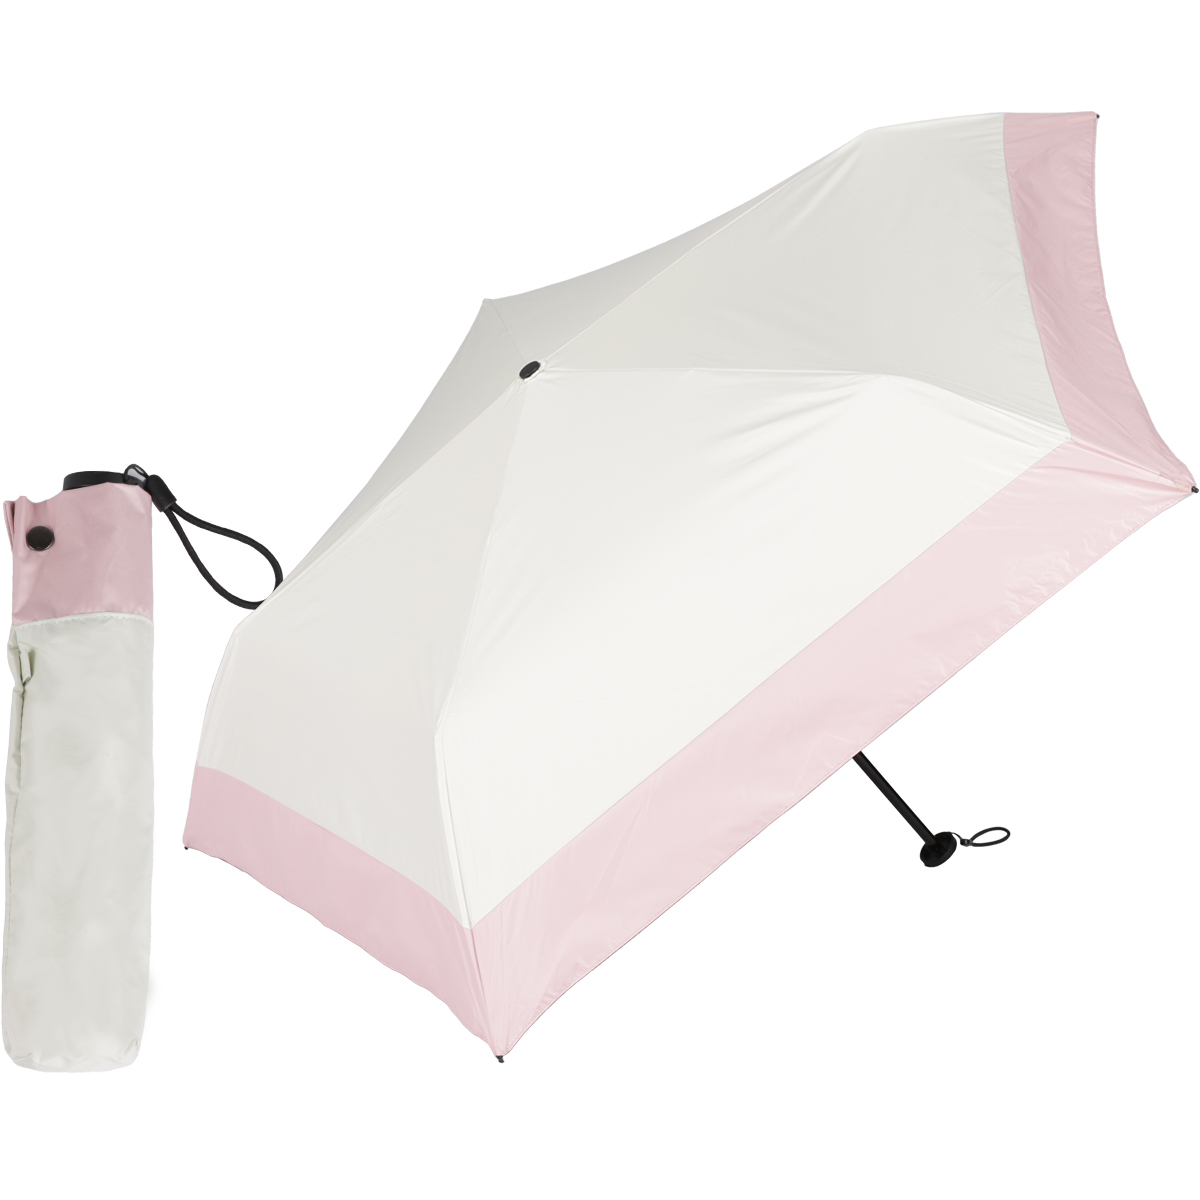 P５倍／日傘 超軽量カーボン傘 110g 完全遮光 折りたたみ傘 レディース 